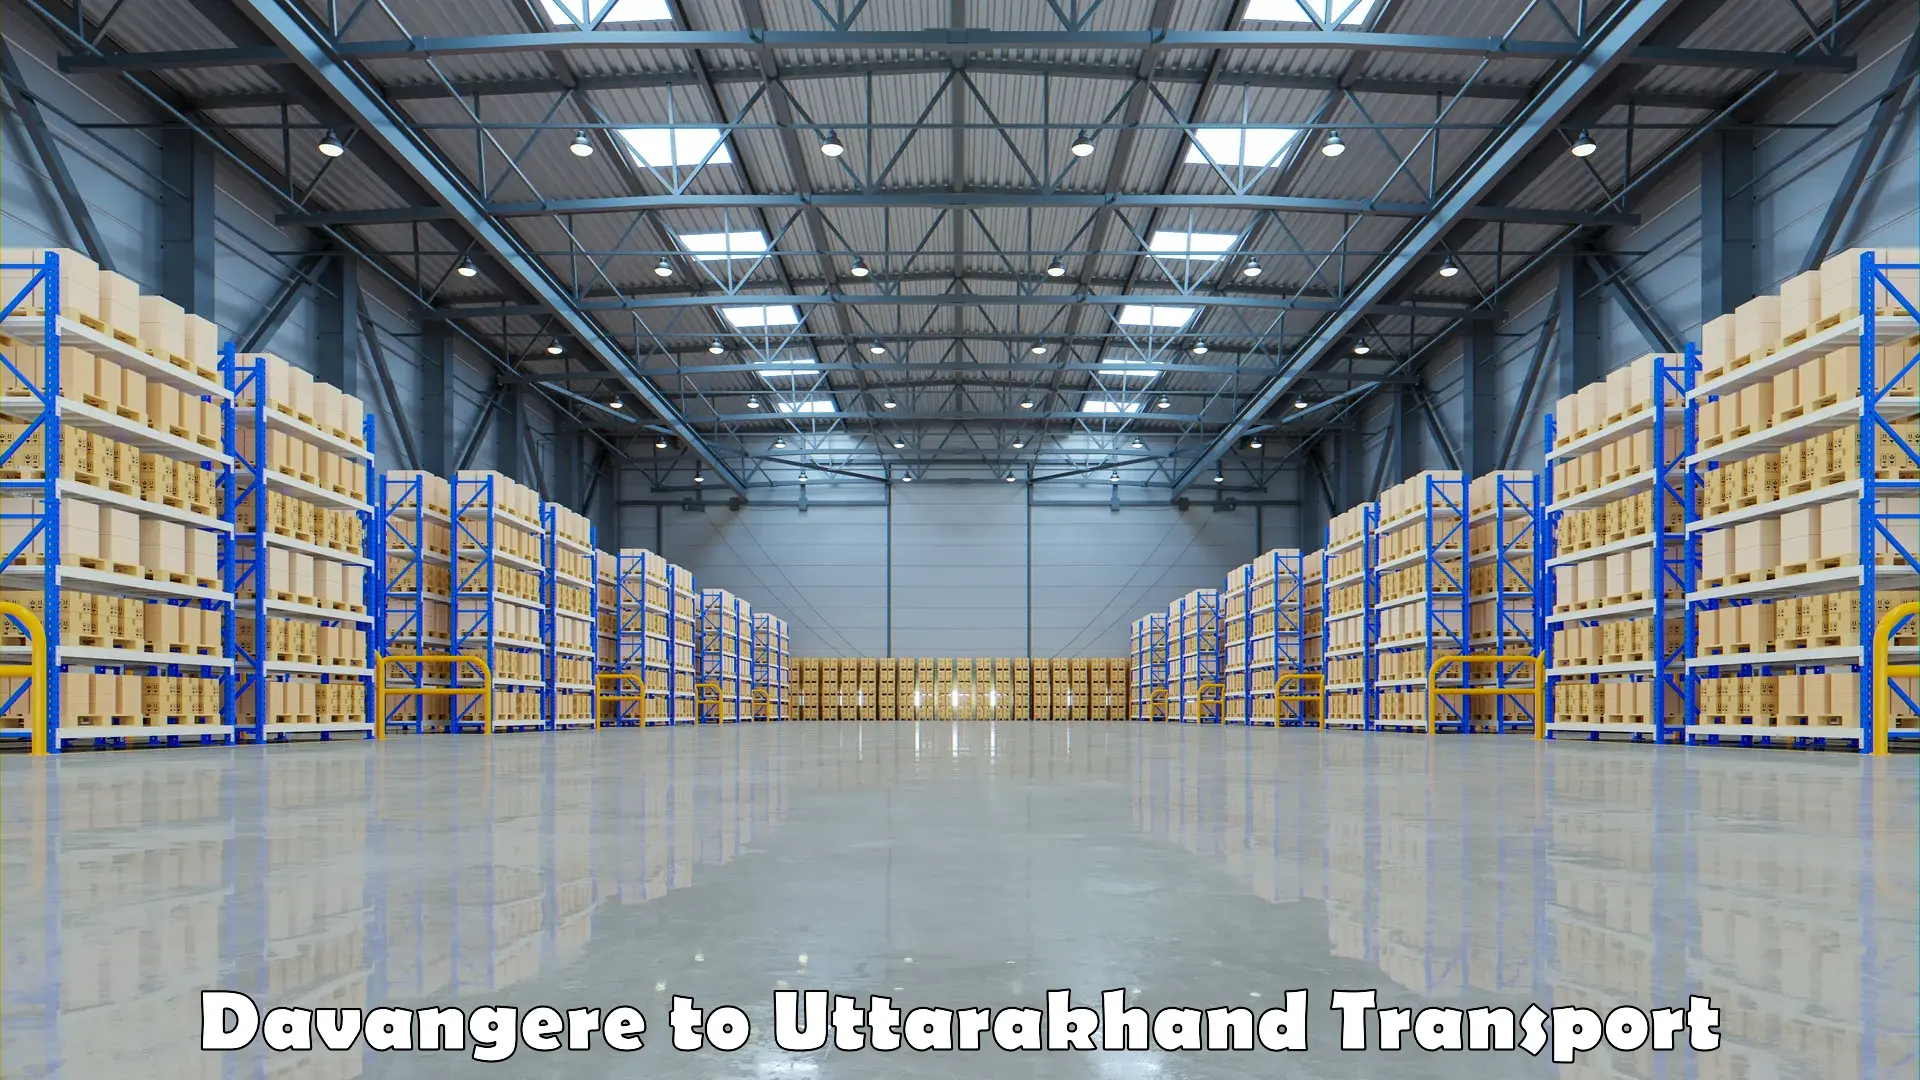 Online transport service Davangere to Uttarakhand